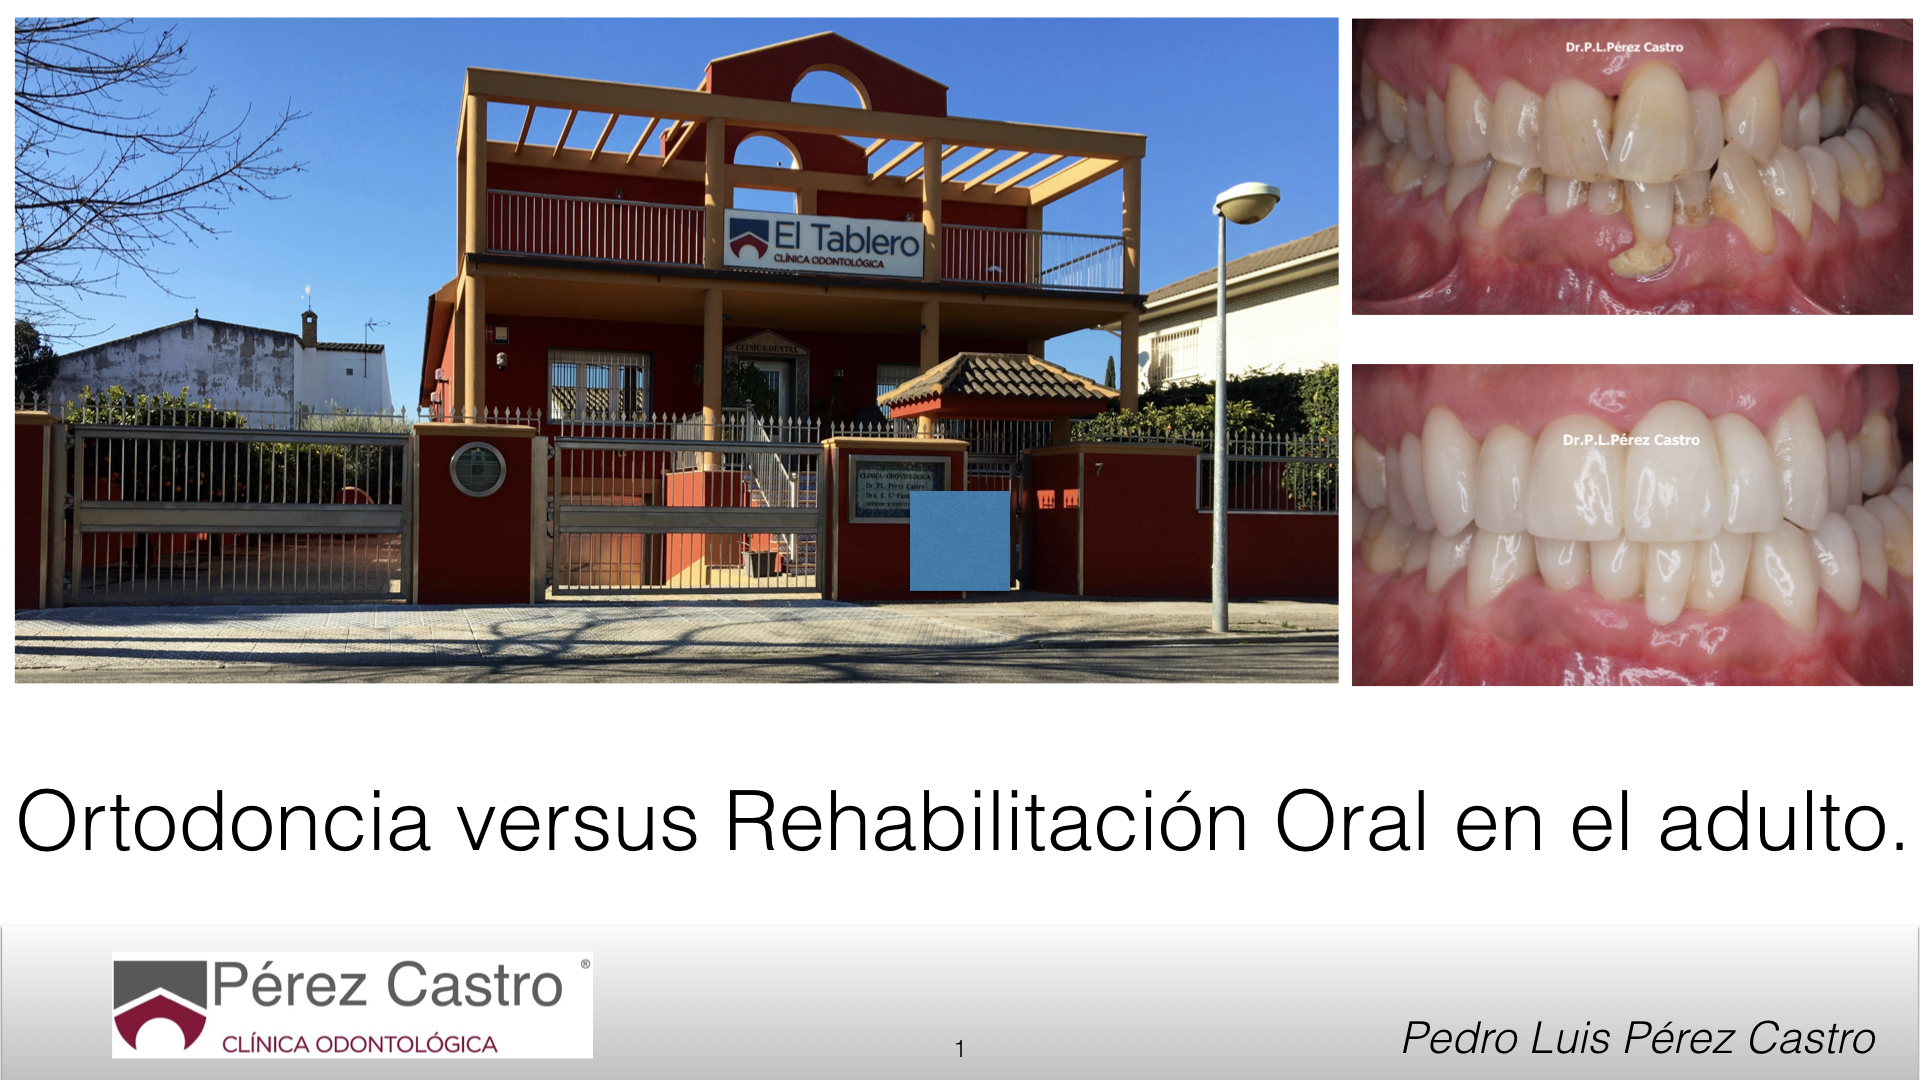 Artículo 33: Ortodoncia versus Rehabilitación Oral en adultos